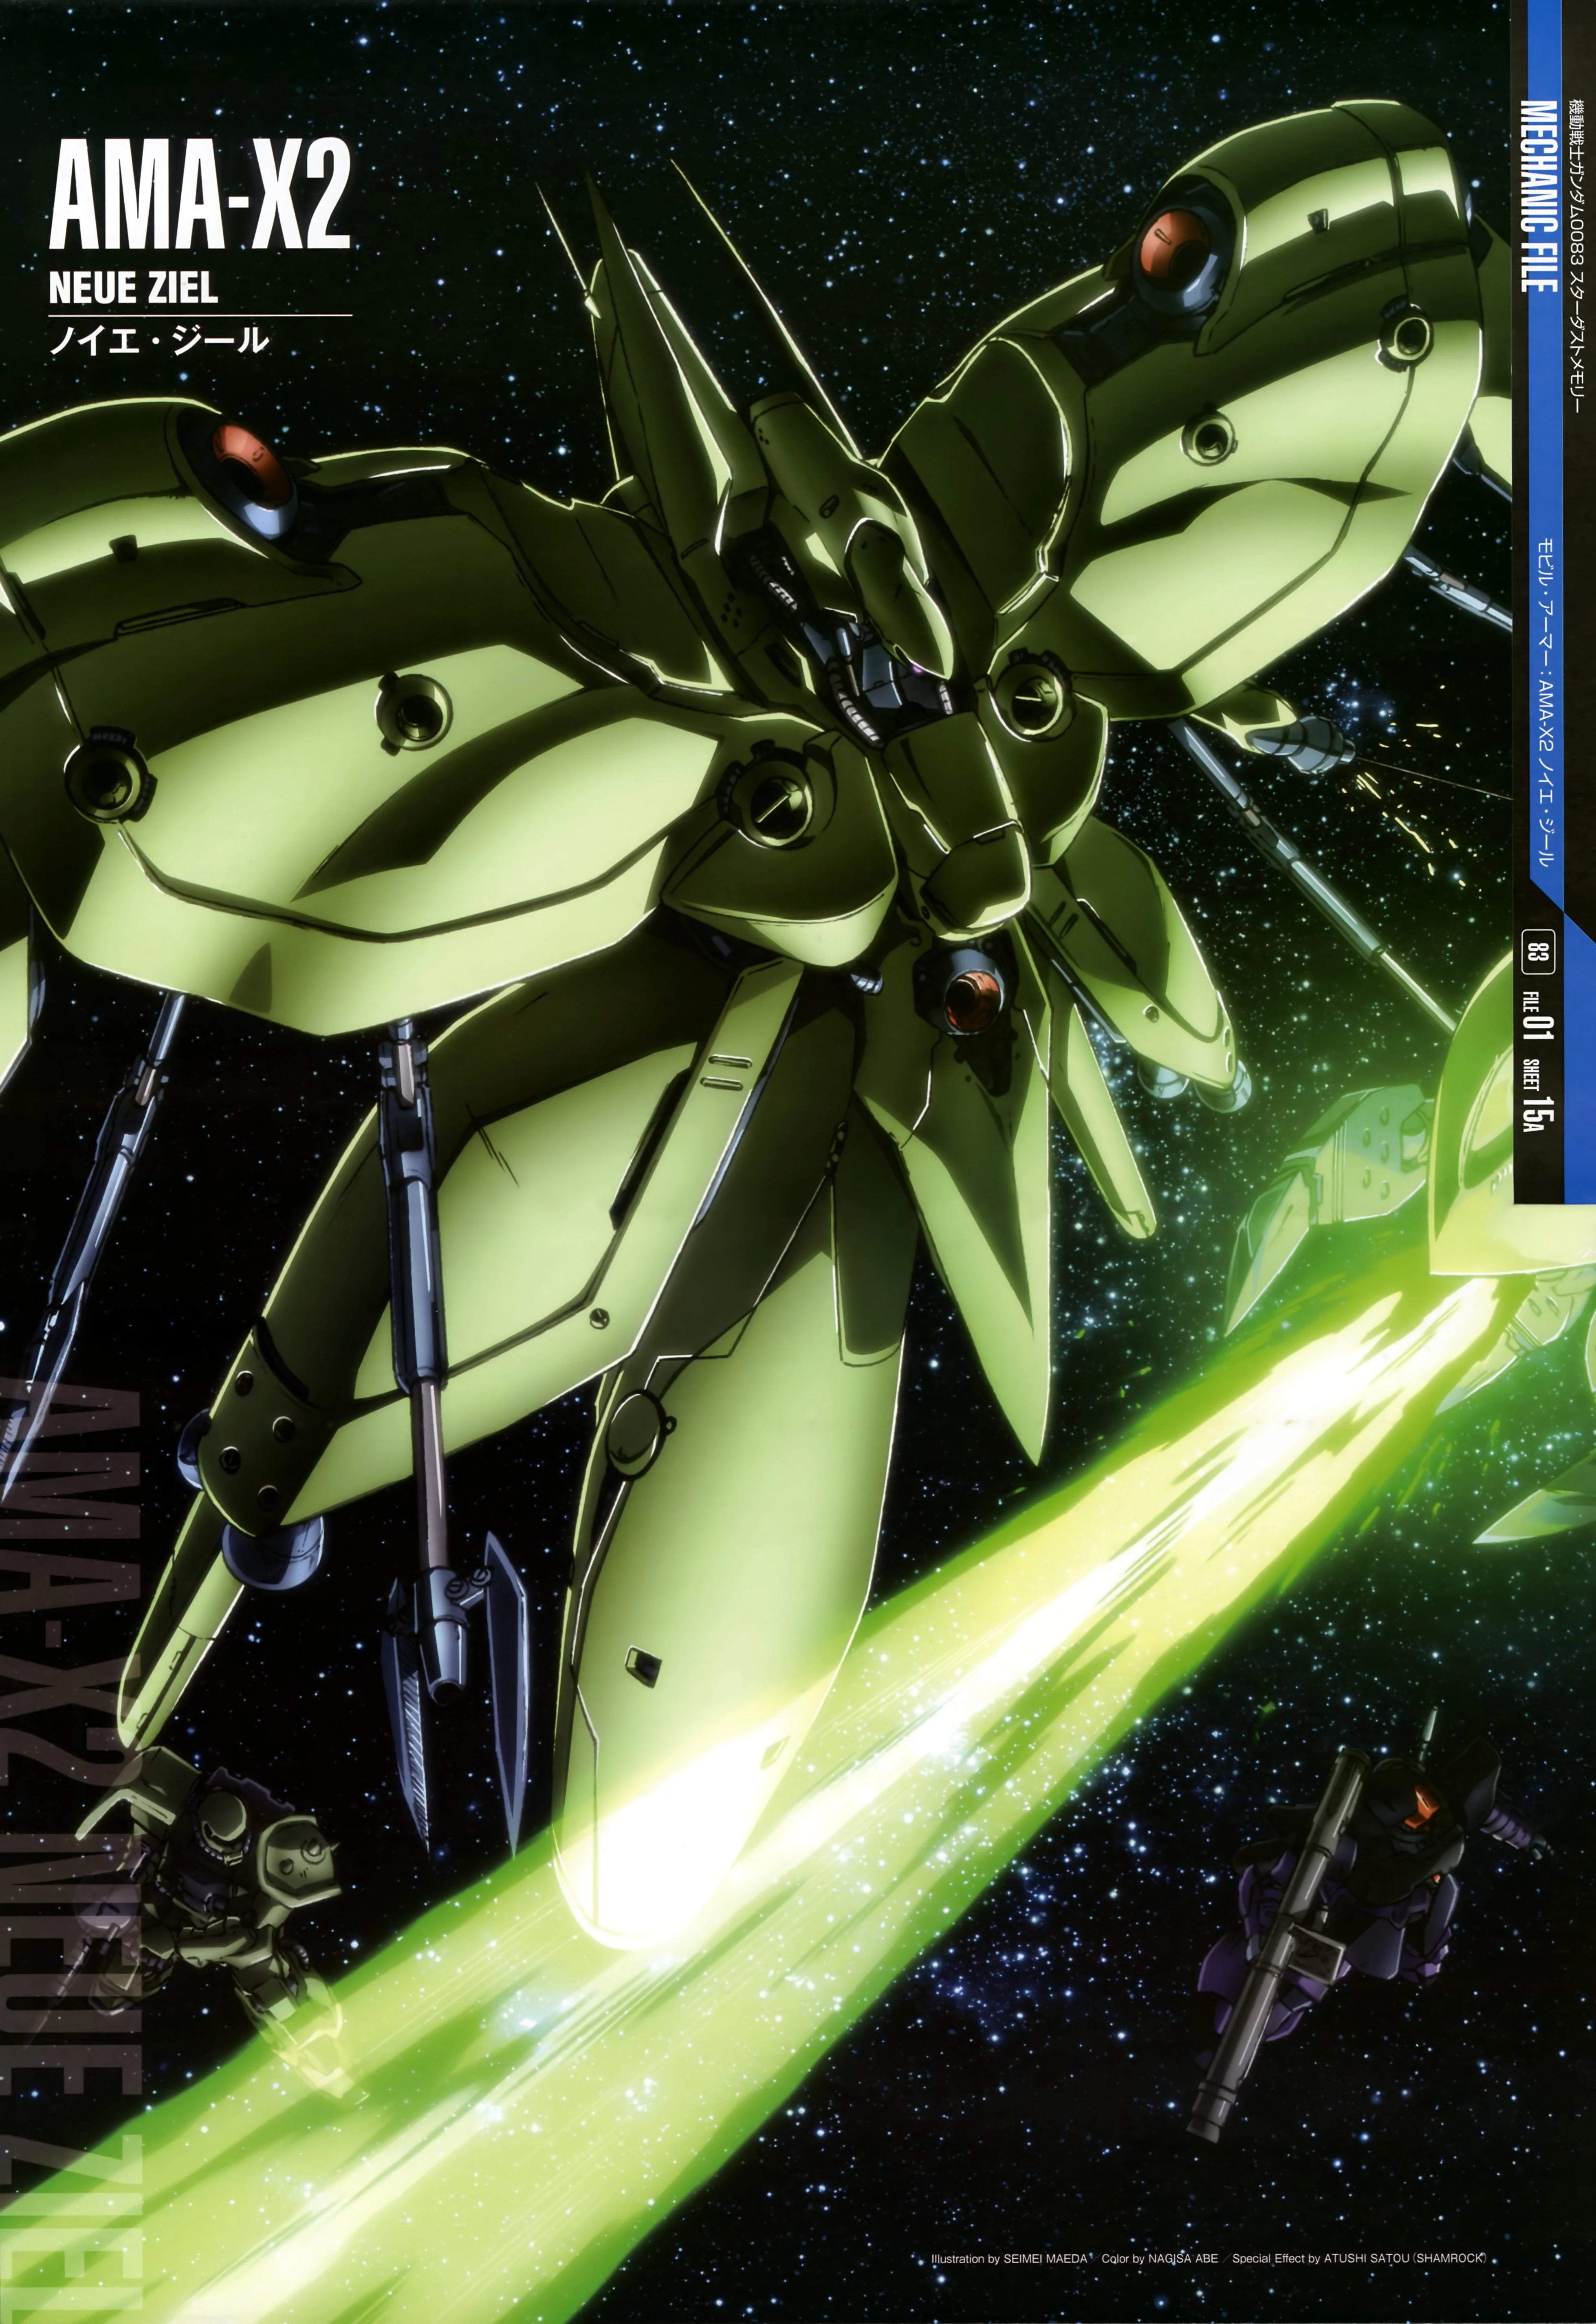 Anime 3917x5704 Mobile Suit Gundam 0083: Stardust Memory anime mechs Super Robot Taisen Neue Ziel artwork digital art fan art